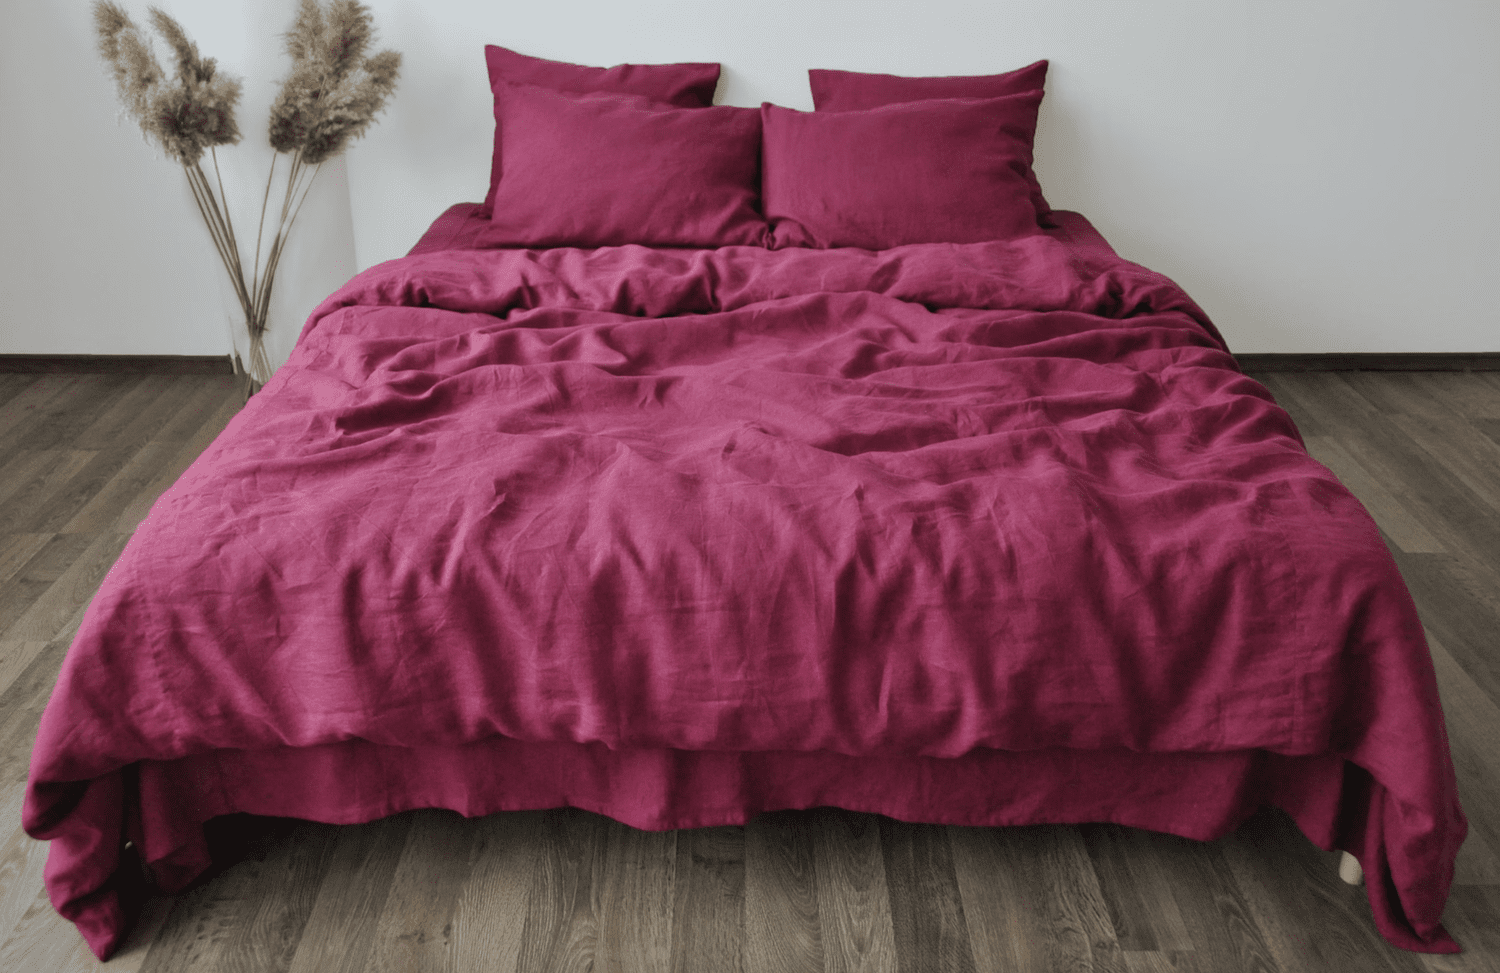 Himbeer-Leinen-Bettdecke